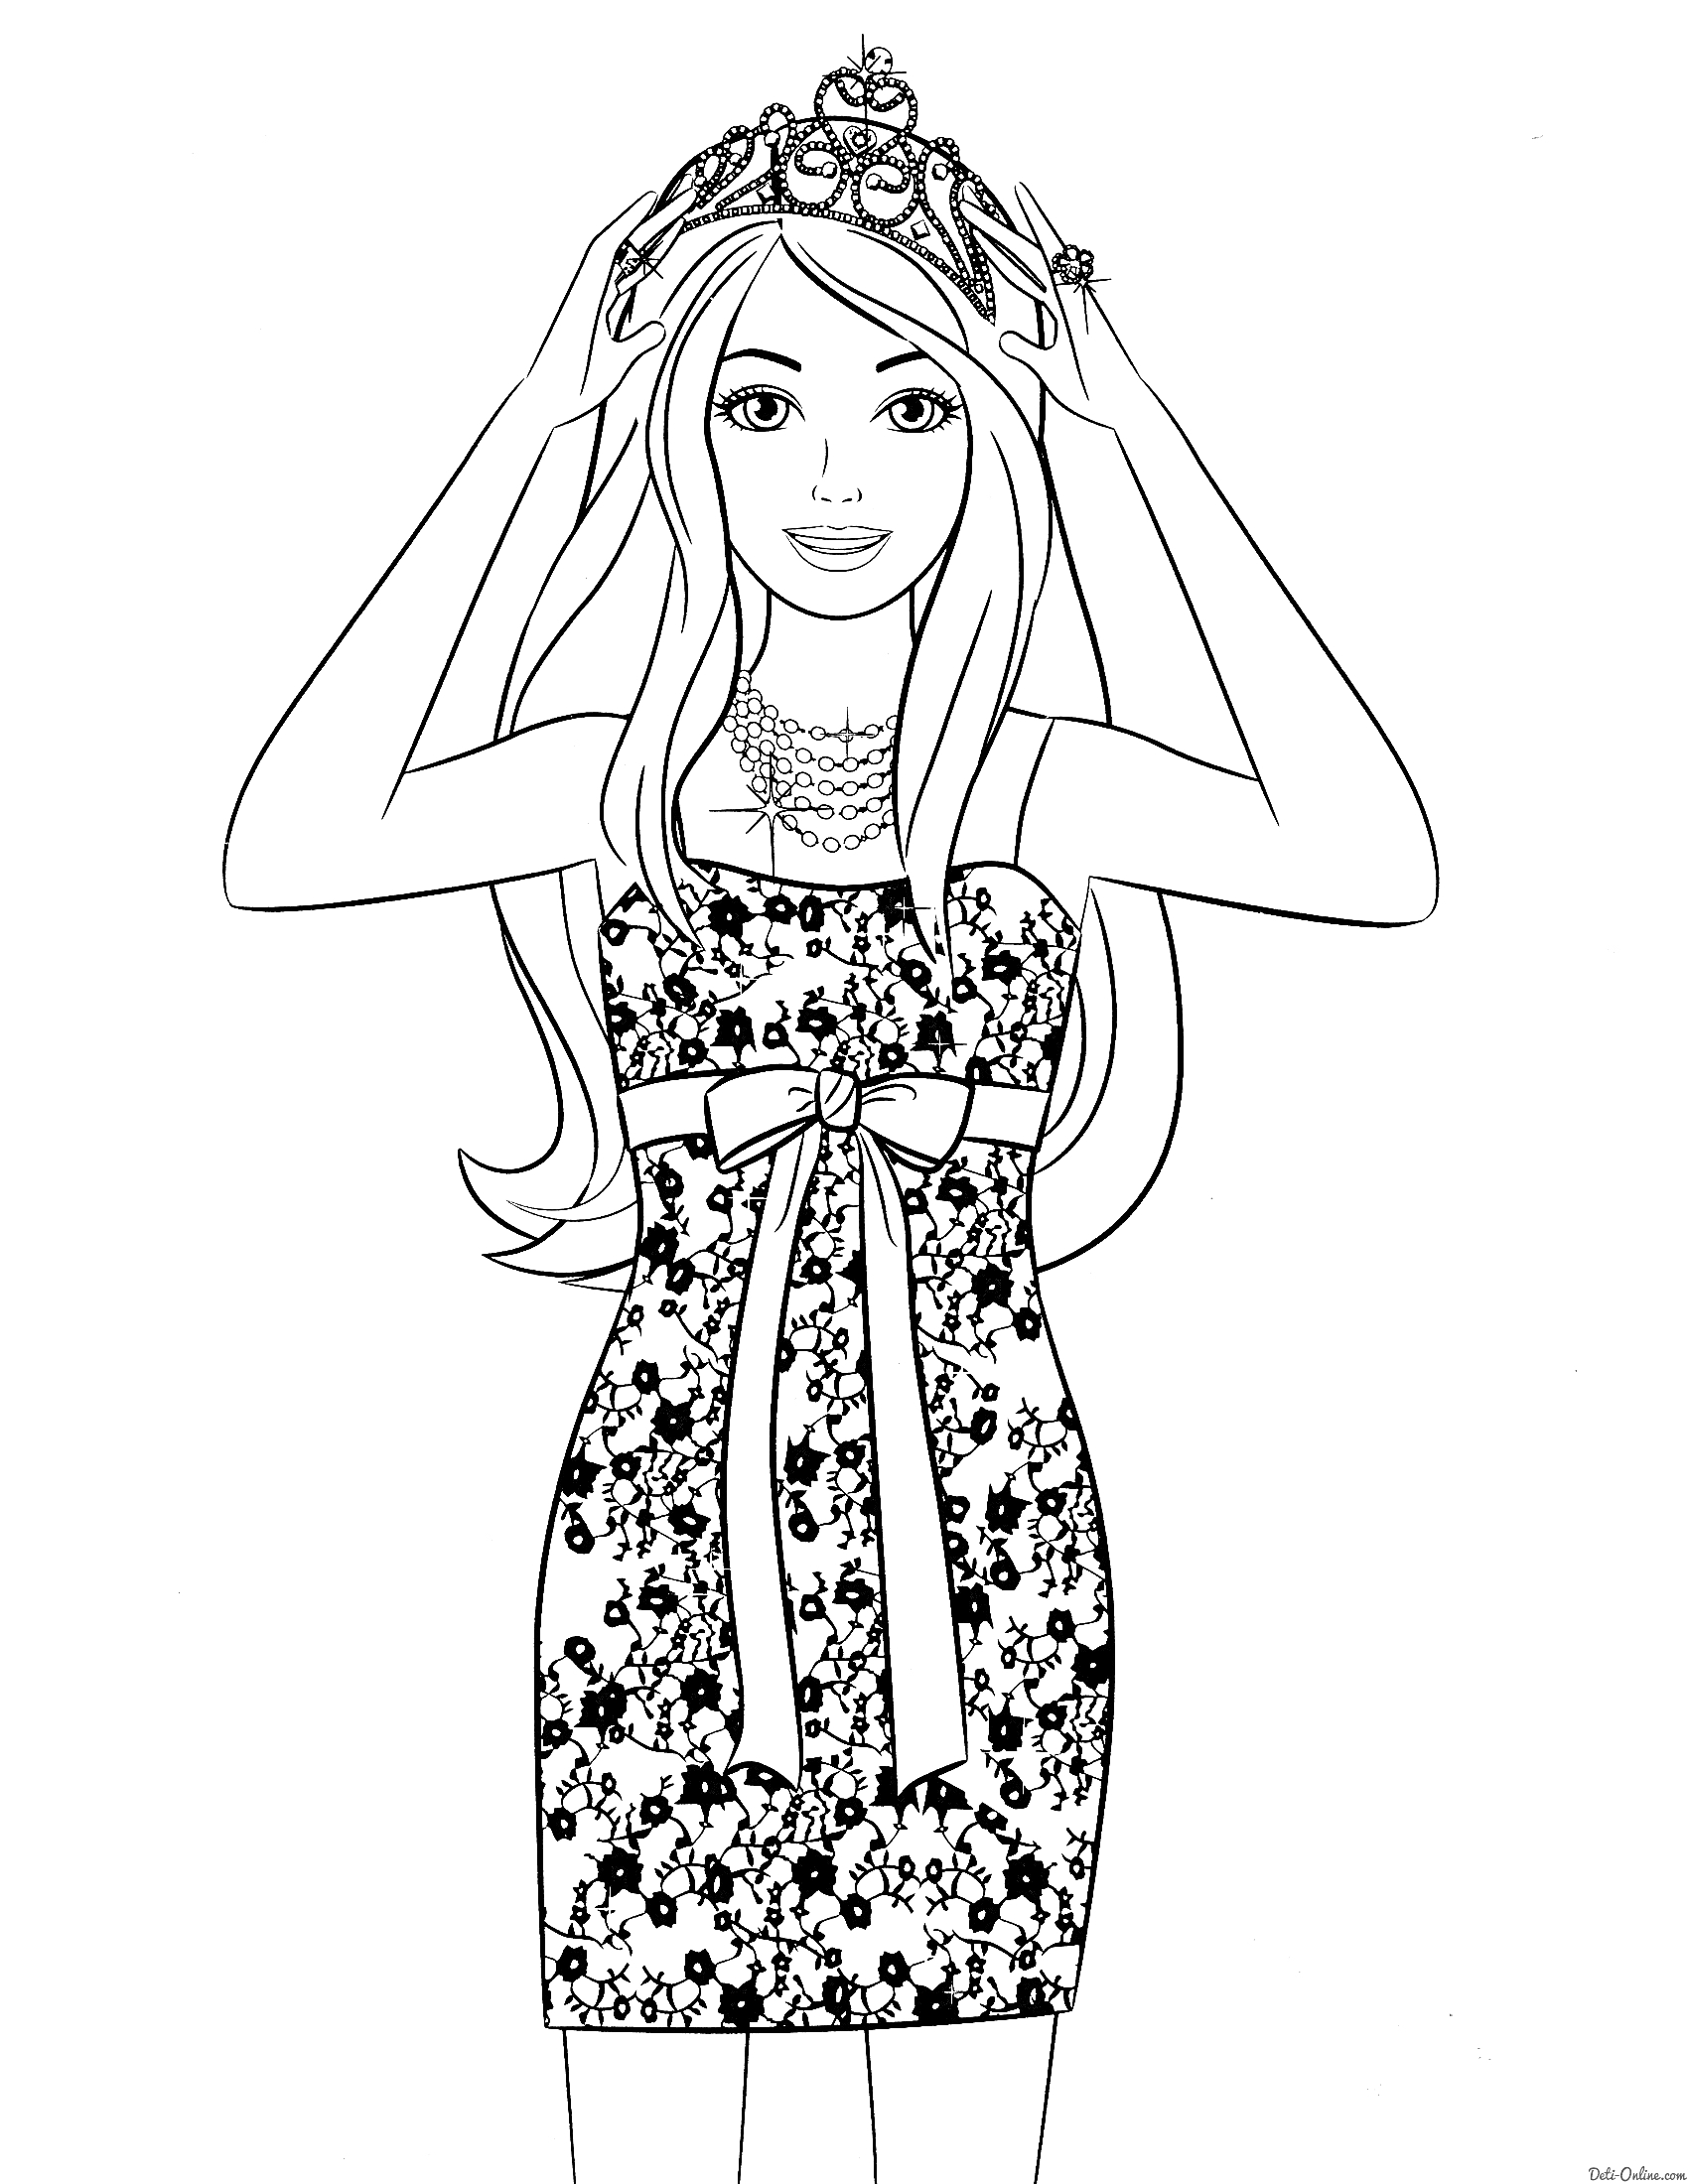 Раскраска Девочка в короне и цветочном платье